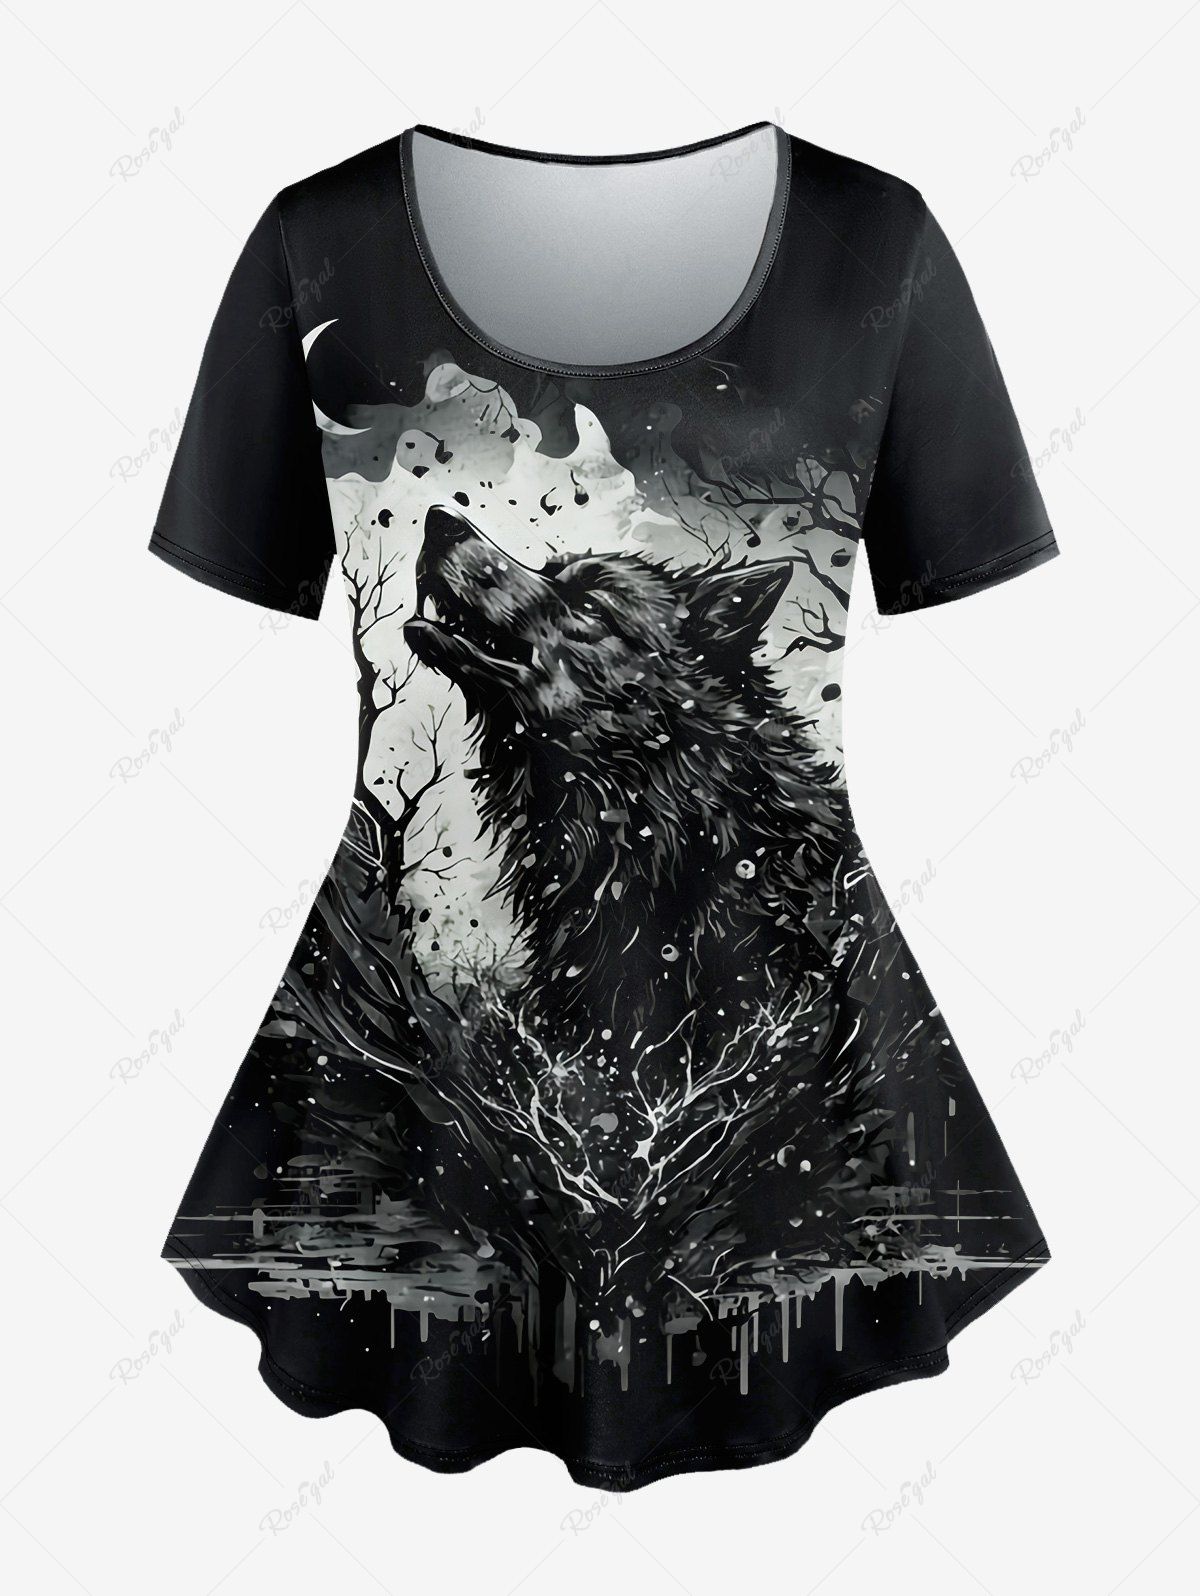 T-shirt Gothique Peinture Eclaboussée Loup et Lune Imprimés à Manches Courtes Noir 1X